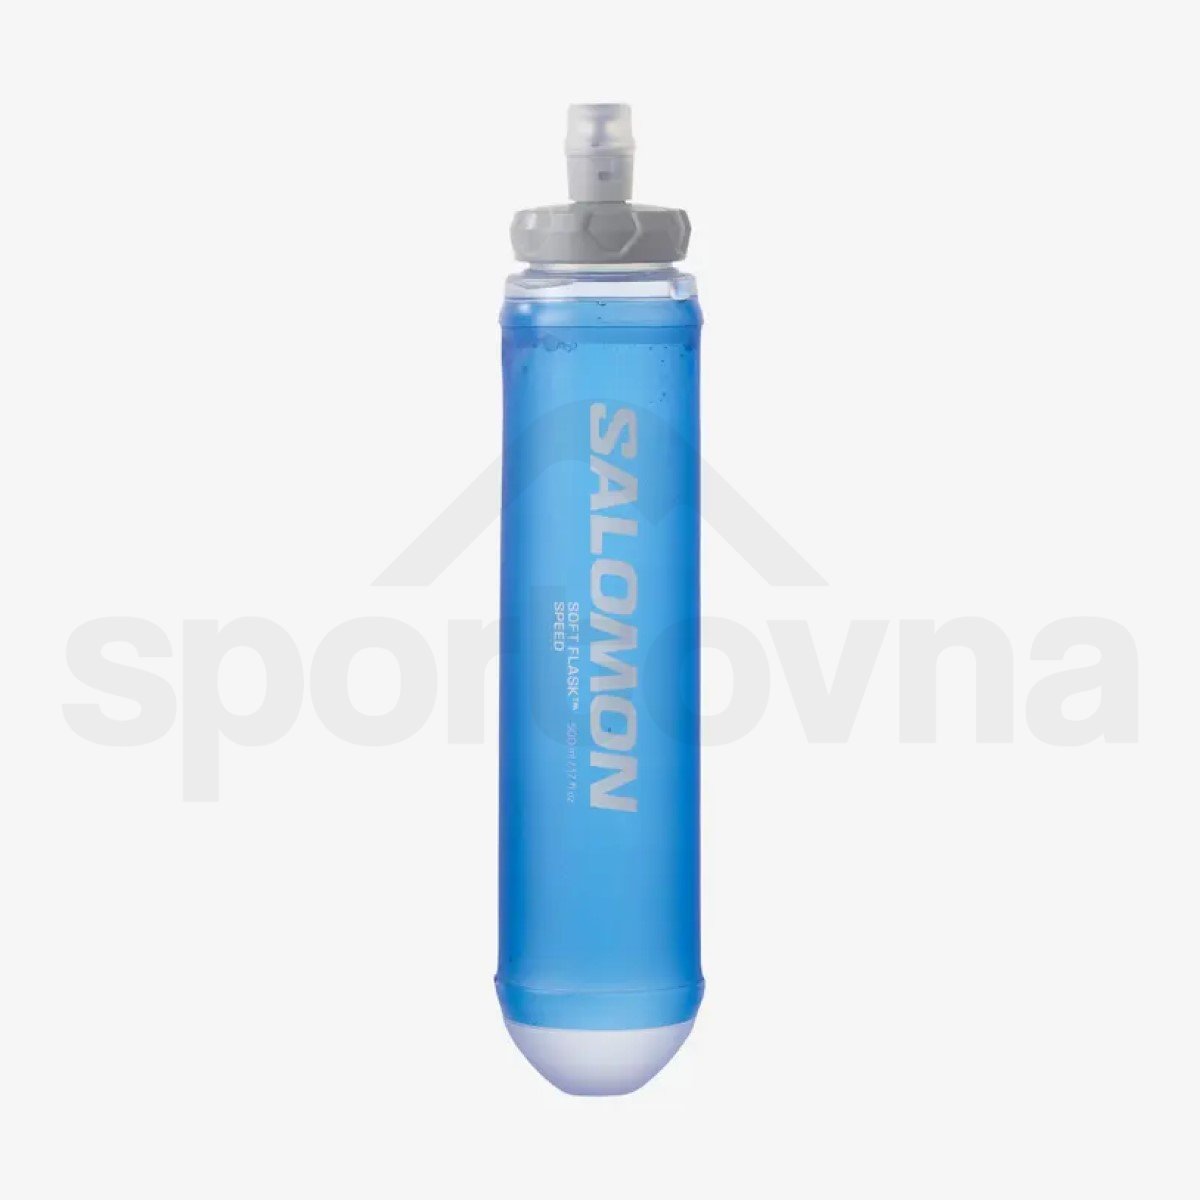 Batoh Salomon Sense Pro 5 with flasks - červená